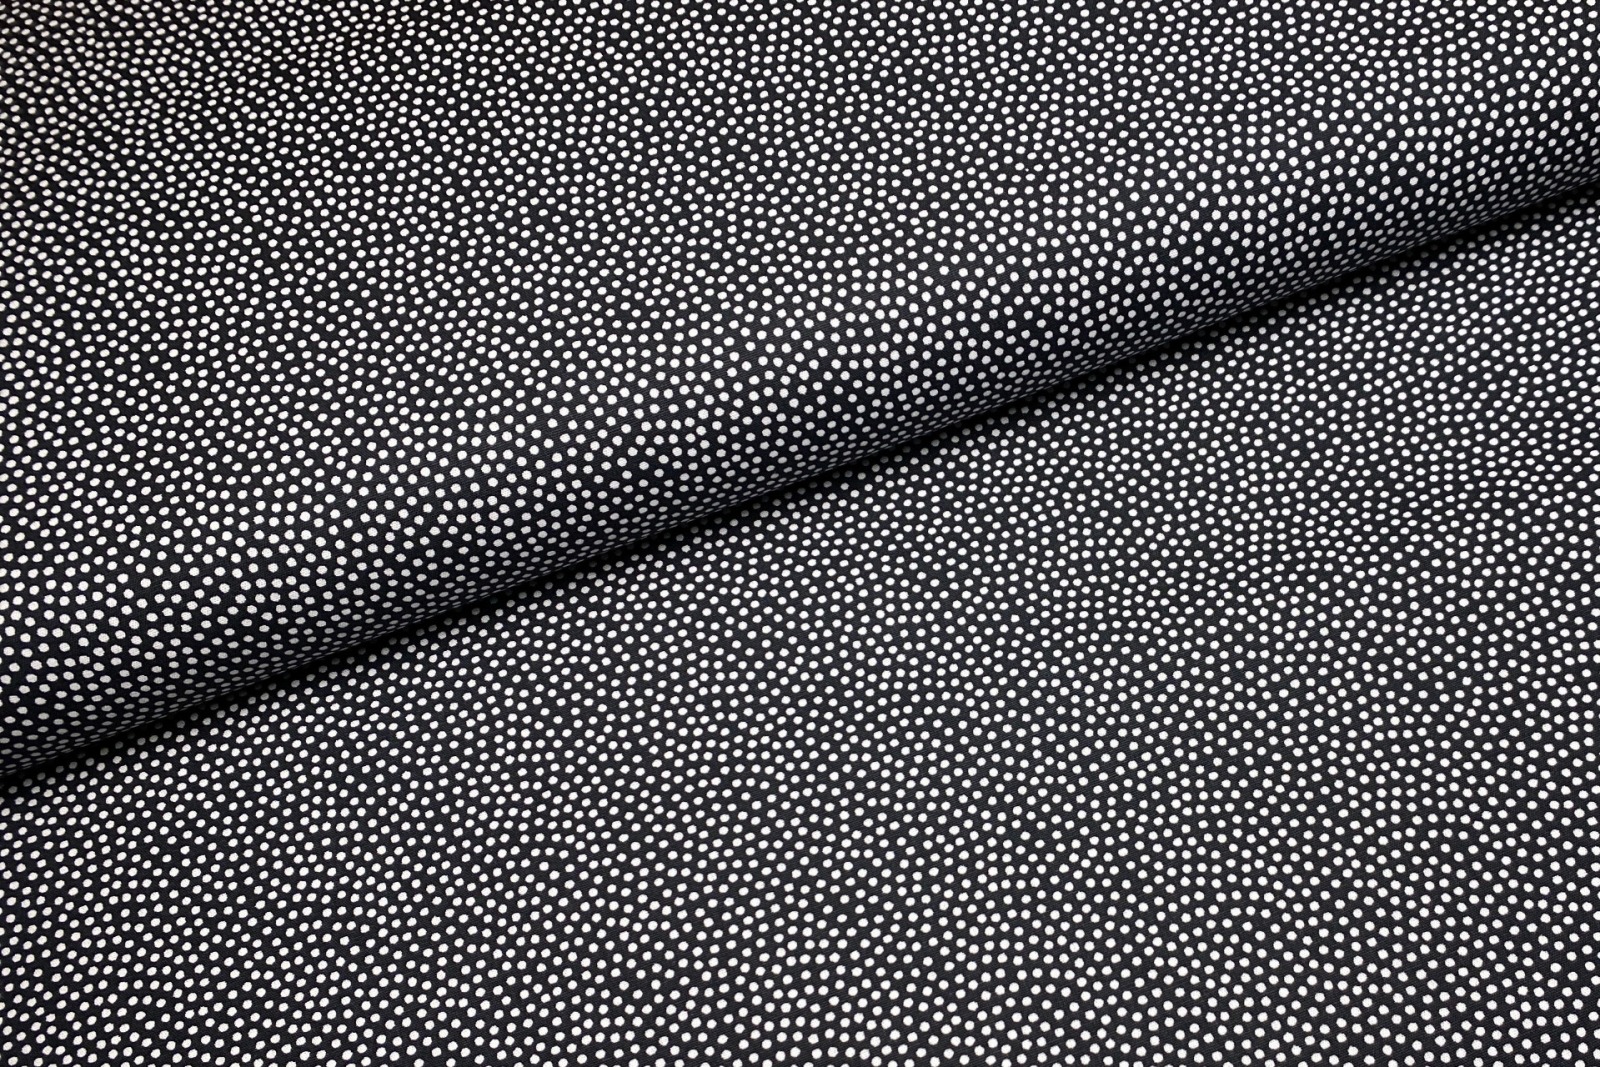 Baumwollwebware - unregelmäßige Punkte - schwarz/weiß - 100% Baumwolle - Dotty - Swafing 3